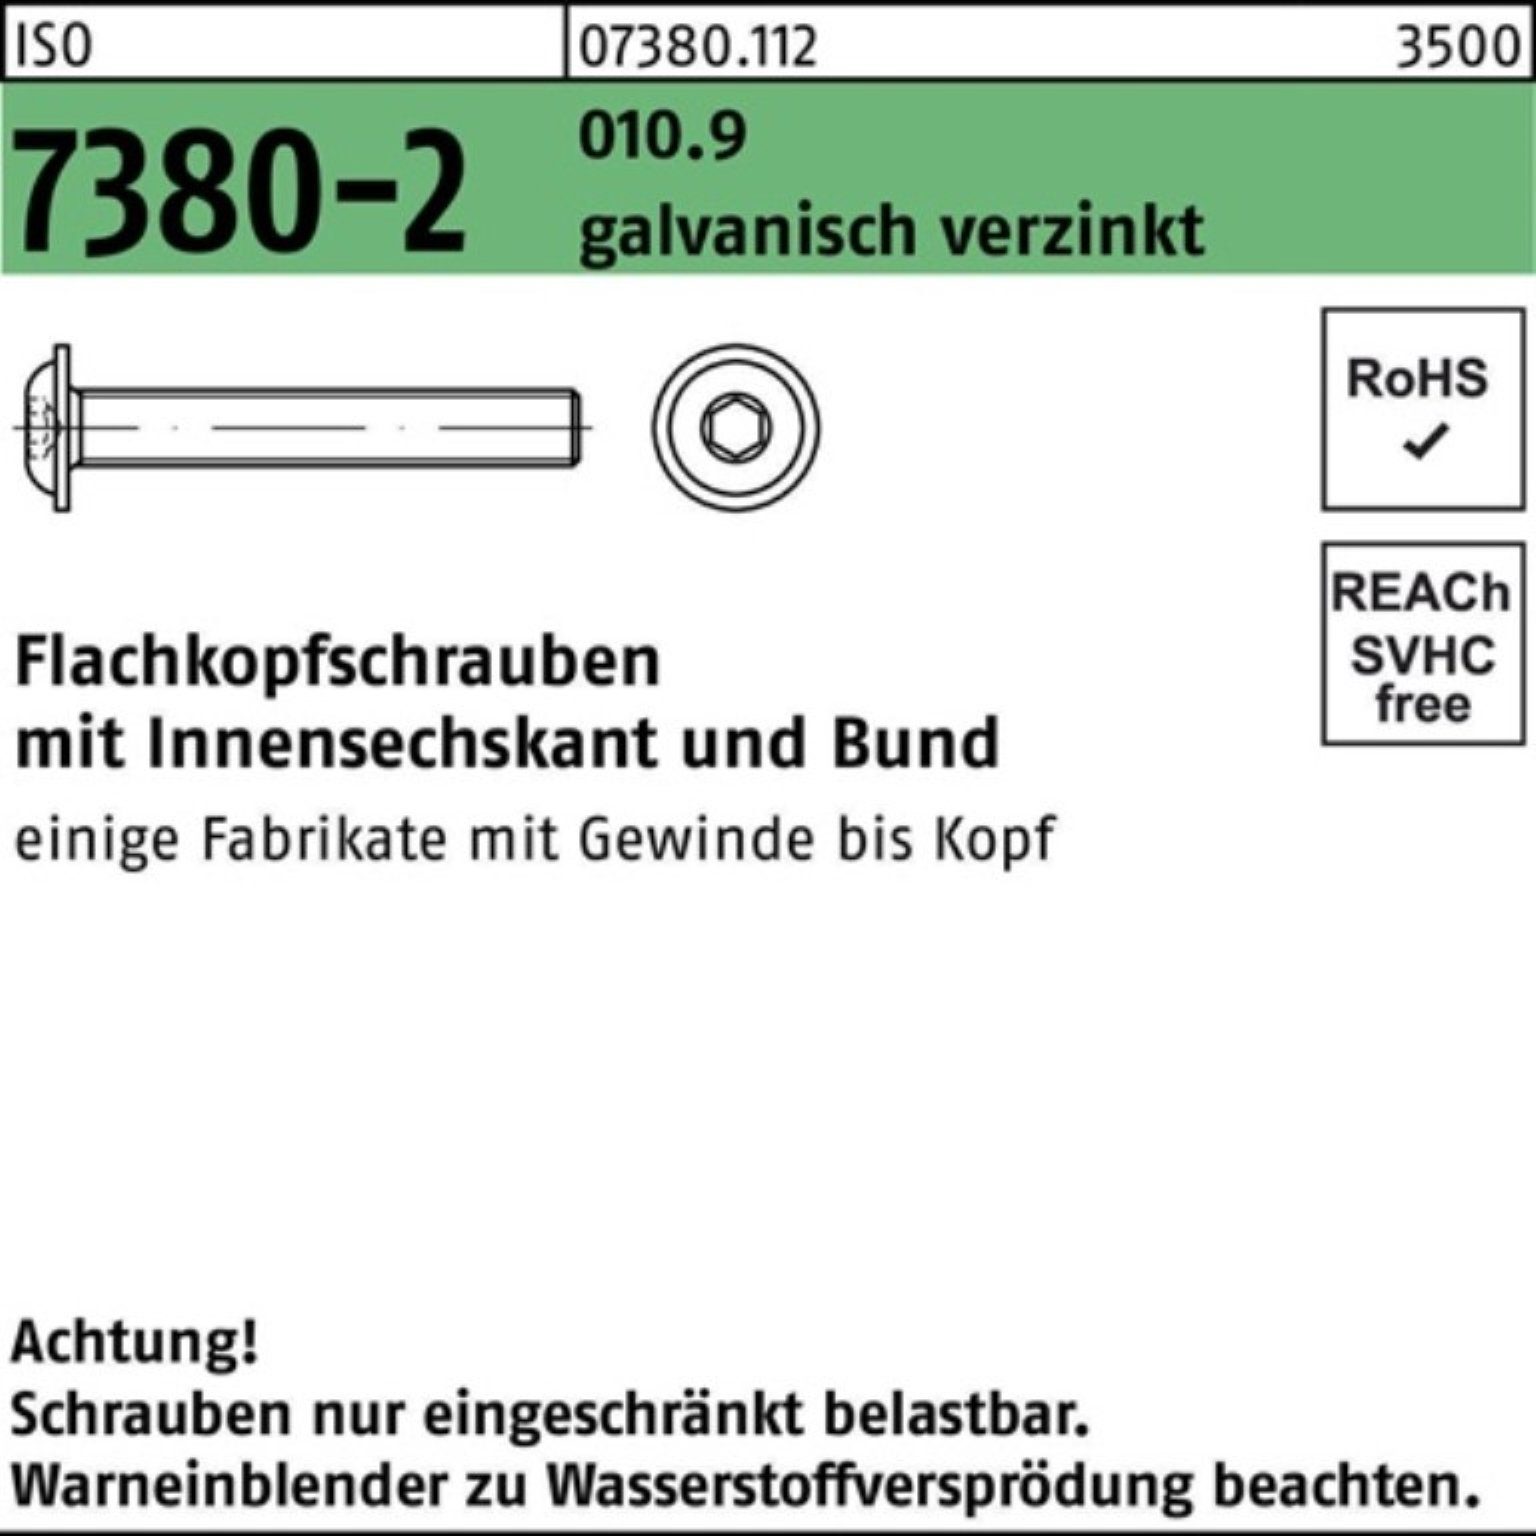 Reyher Schraube 200er Pack Flachkopfschraube ga 010.9 M10x20 Bund/Innen-6kt 7380-2 ISO